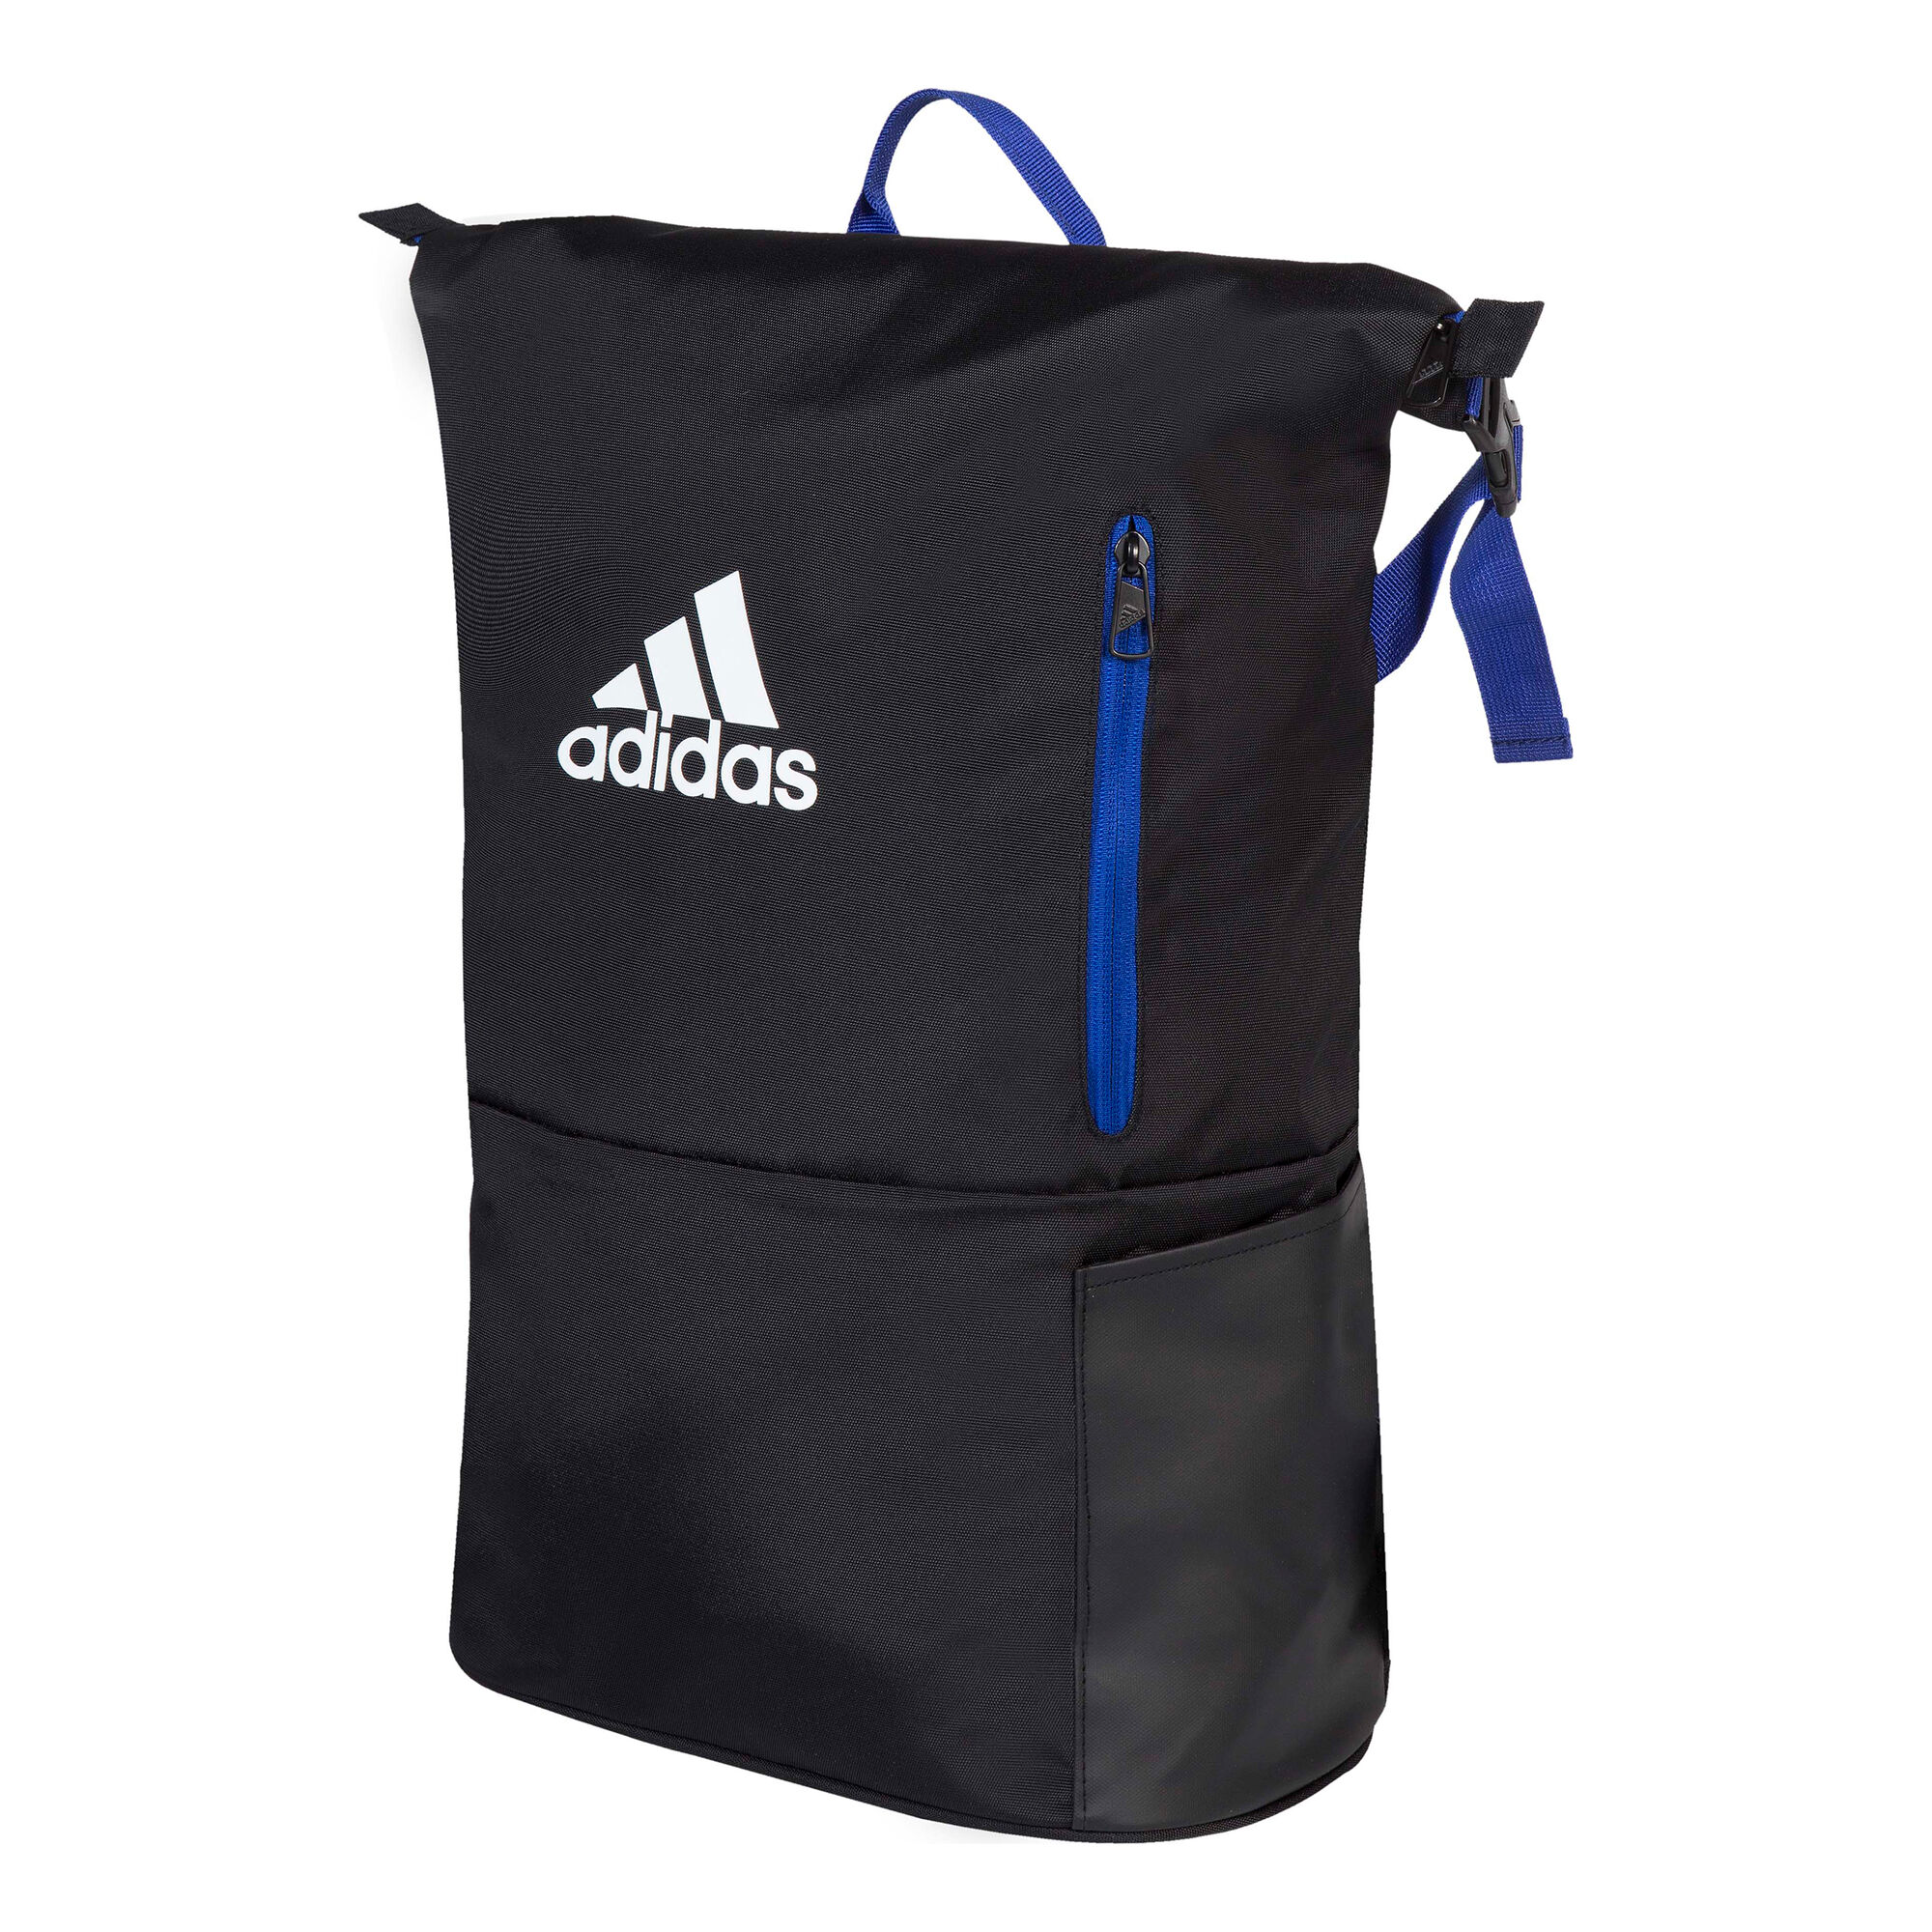 Oxidado Aparador Molesto buy adidas Multigame MULTIGAME Backpack - Black, Blue online | Tennis-Point